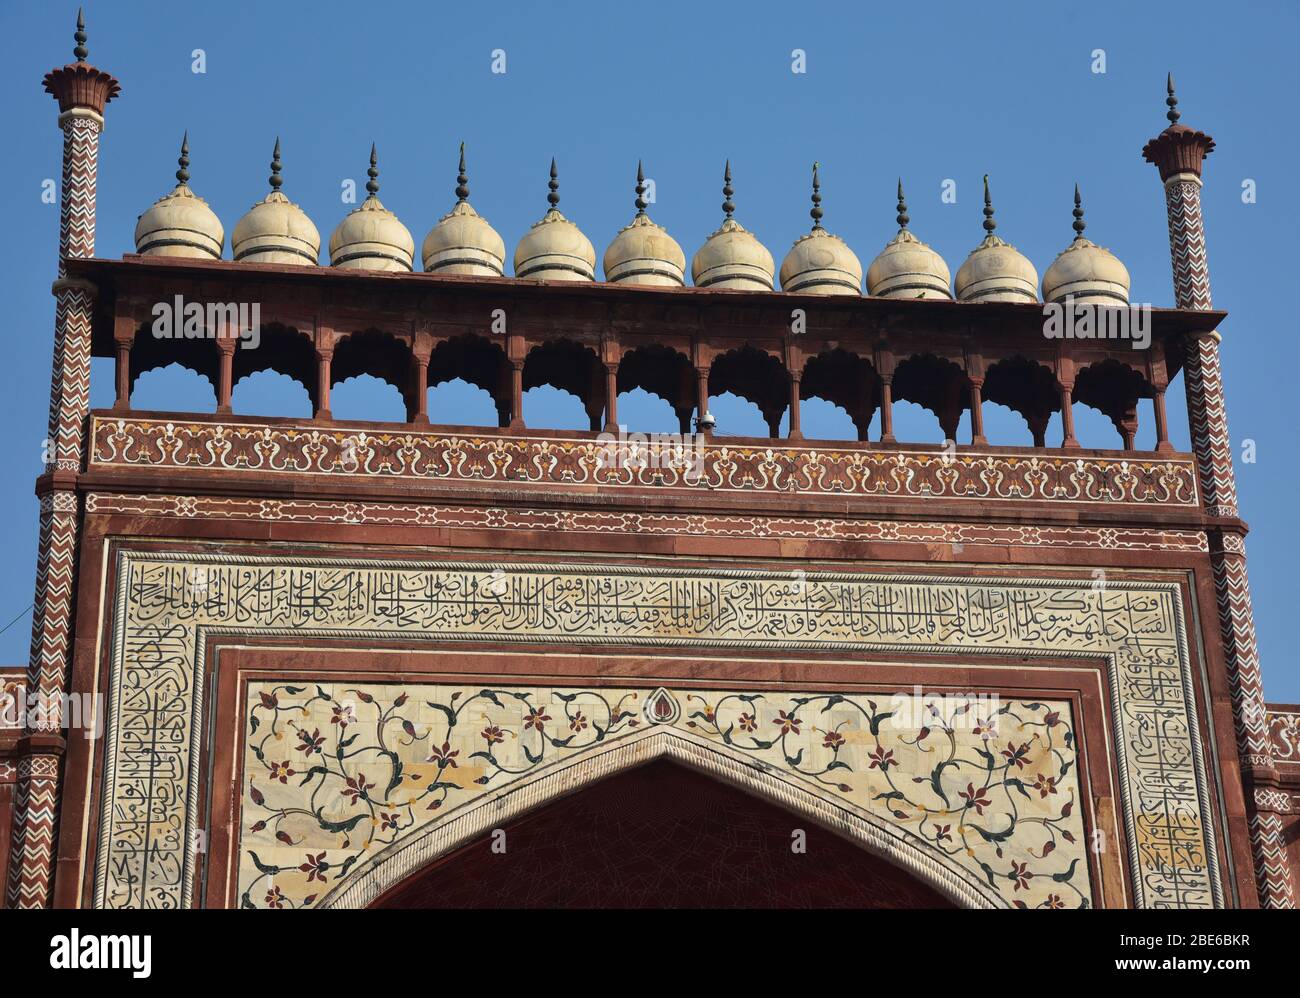 Détail chhatris décoratif de la Grande porte, Darwaza-i rauza, du complexe Taj Mahal, entrée de porte sud, Uttar Pradesh, Inde, Asie. Banque D'Images